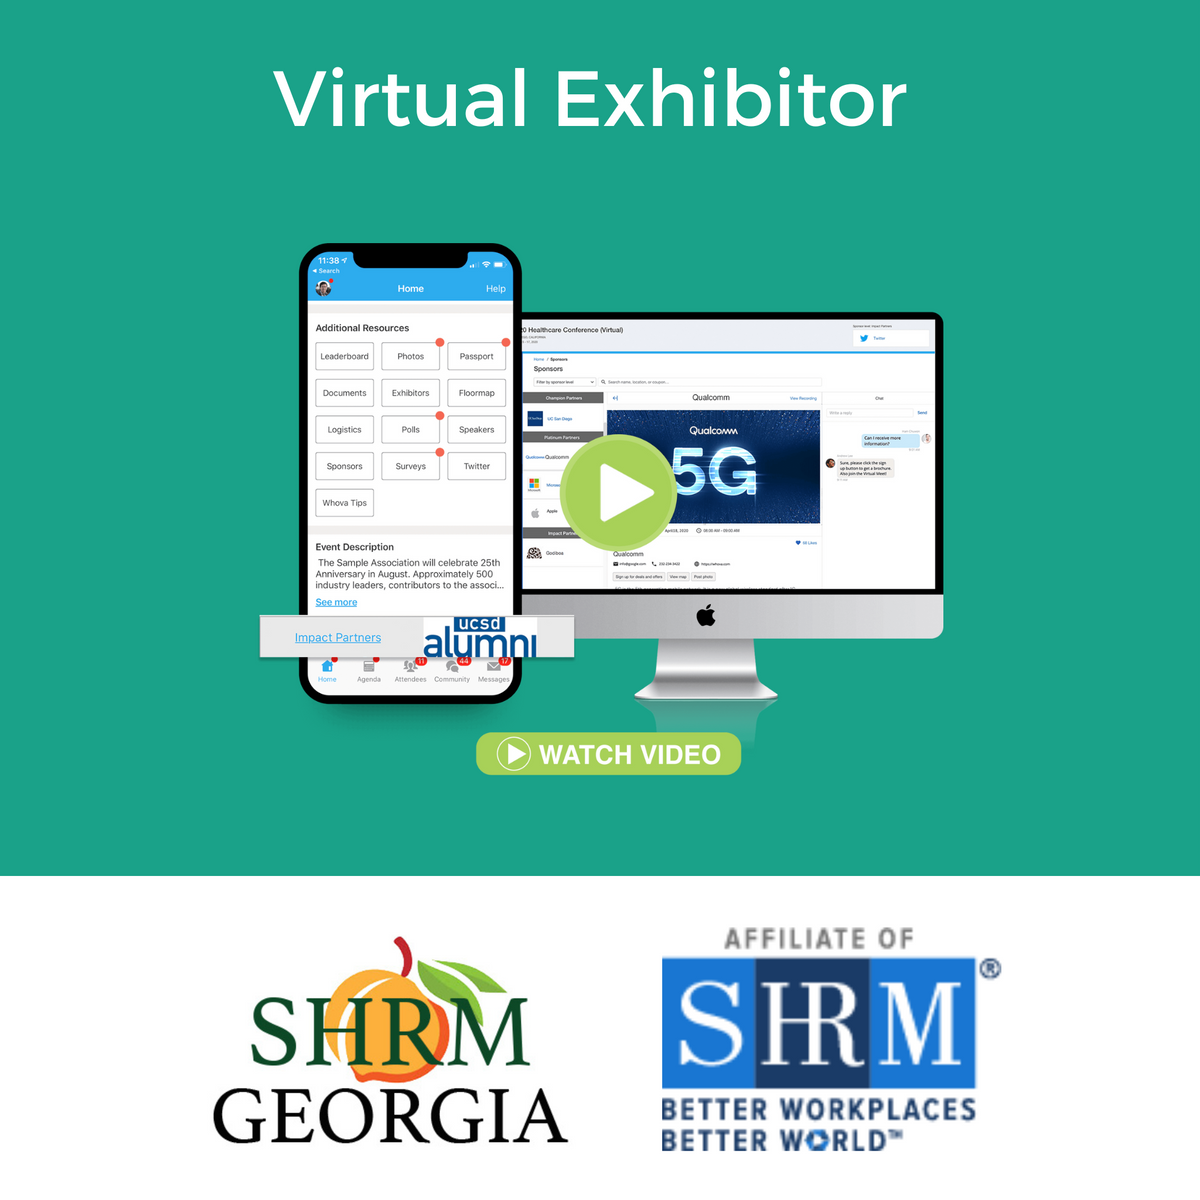 24 GA SHRM Annual - Virtual Exhibitor